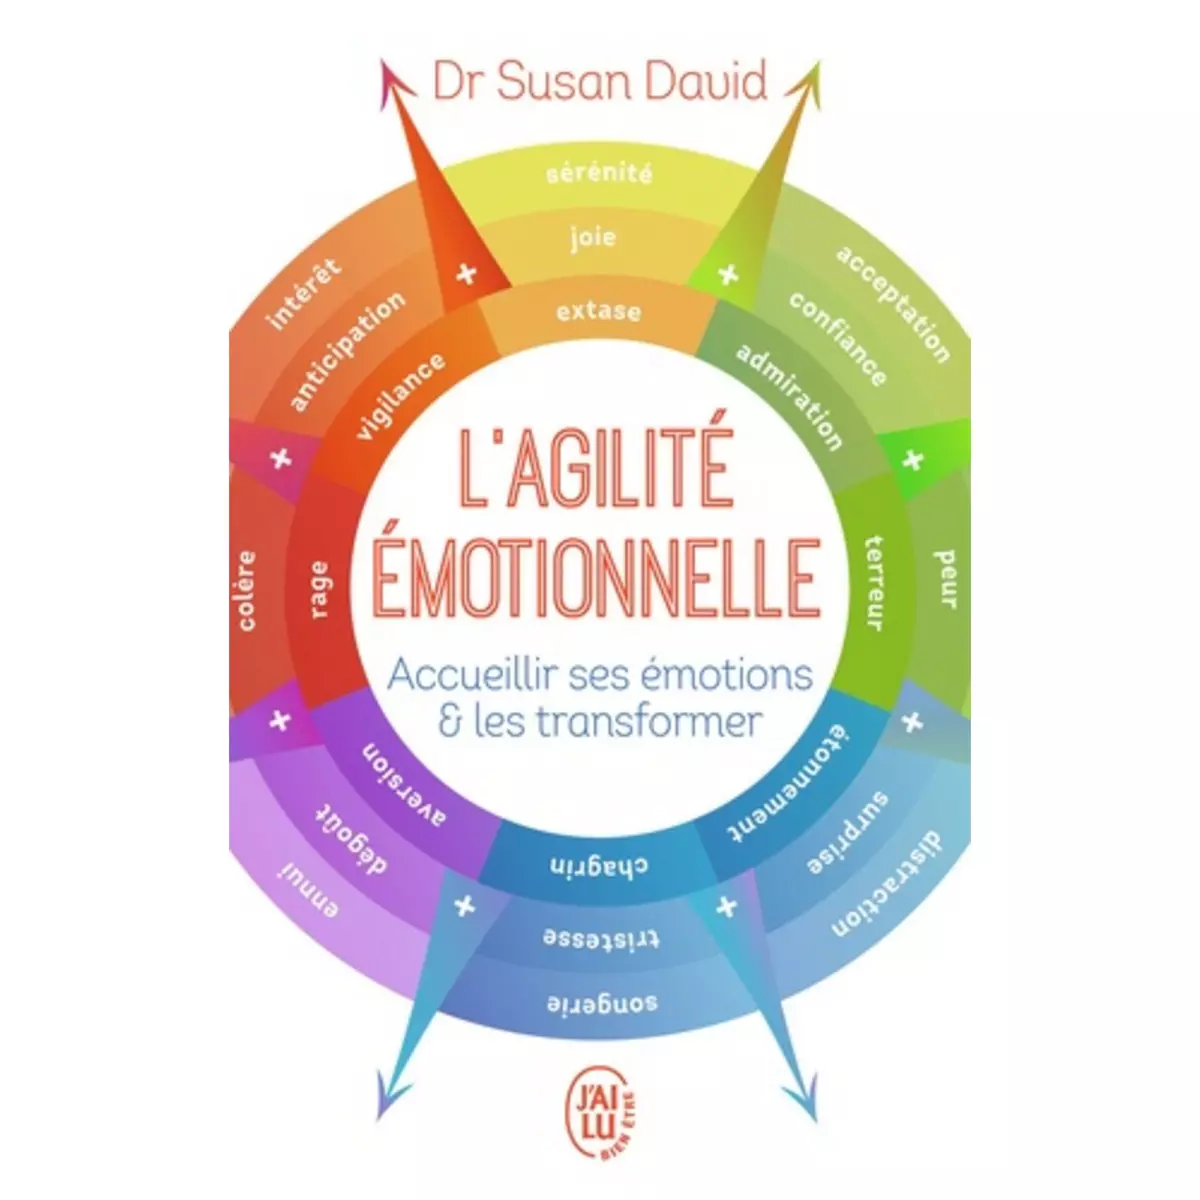  L'AGILITE EMOTIONNELLE. ACCUEILLIR SES EMOTIONS ET LES TRANSFORMER, David Susan